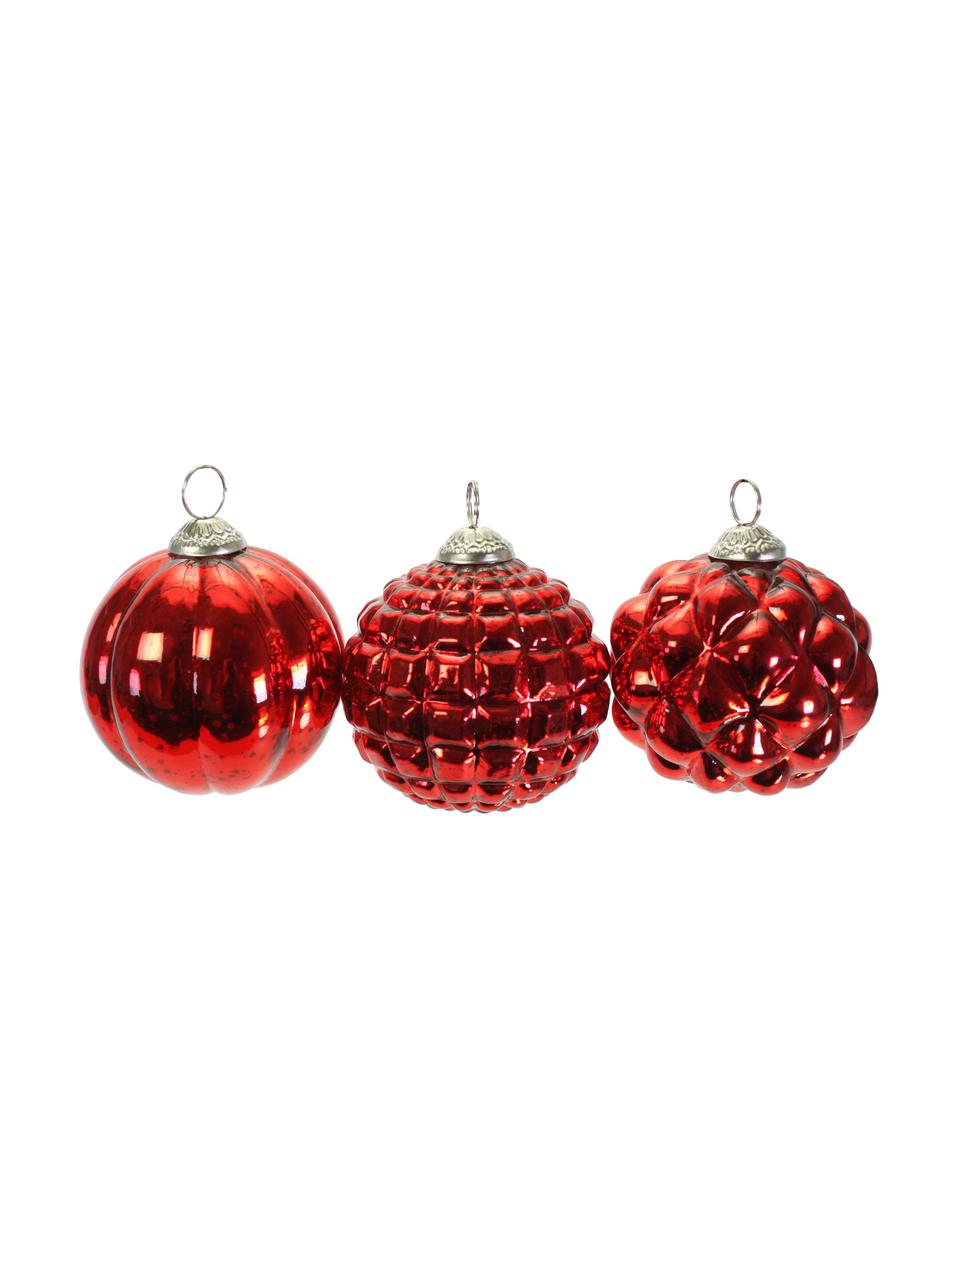 Kerstballenset Red Variety, 3-delig, Gelakt glas, Rood, Ø 10 cm